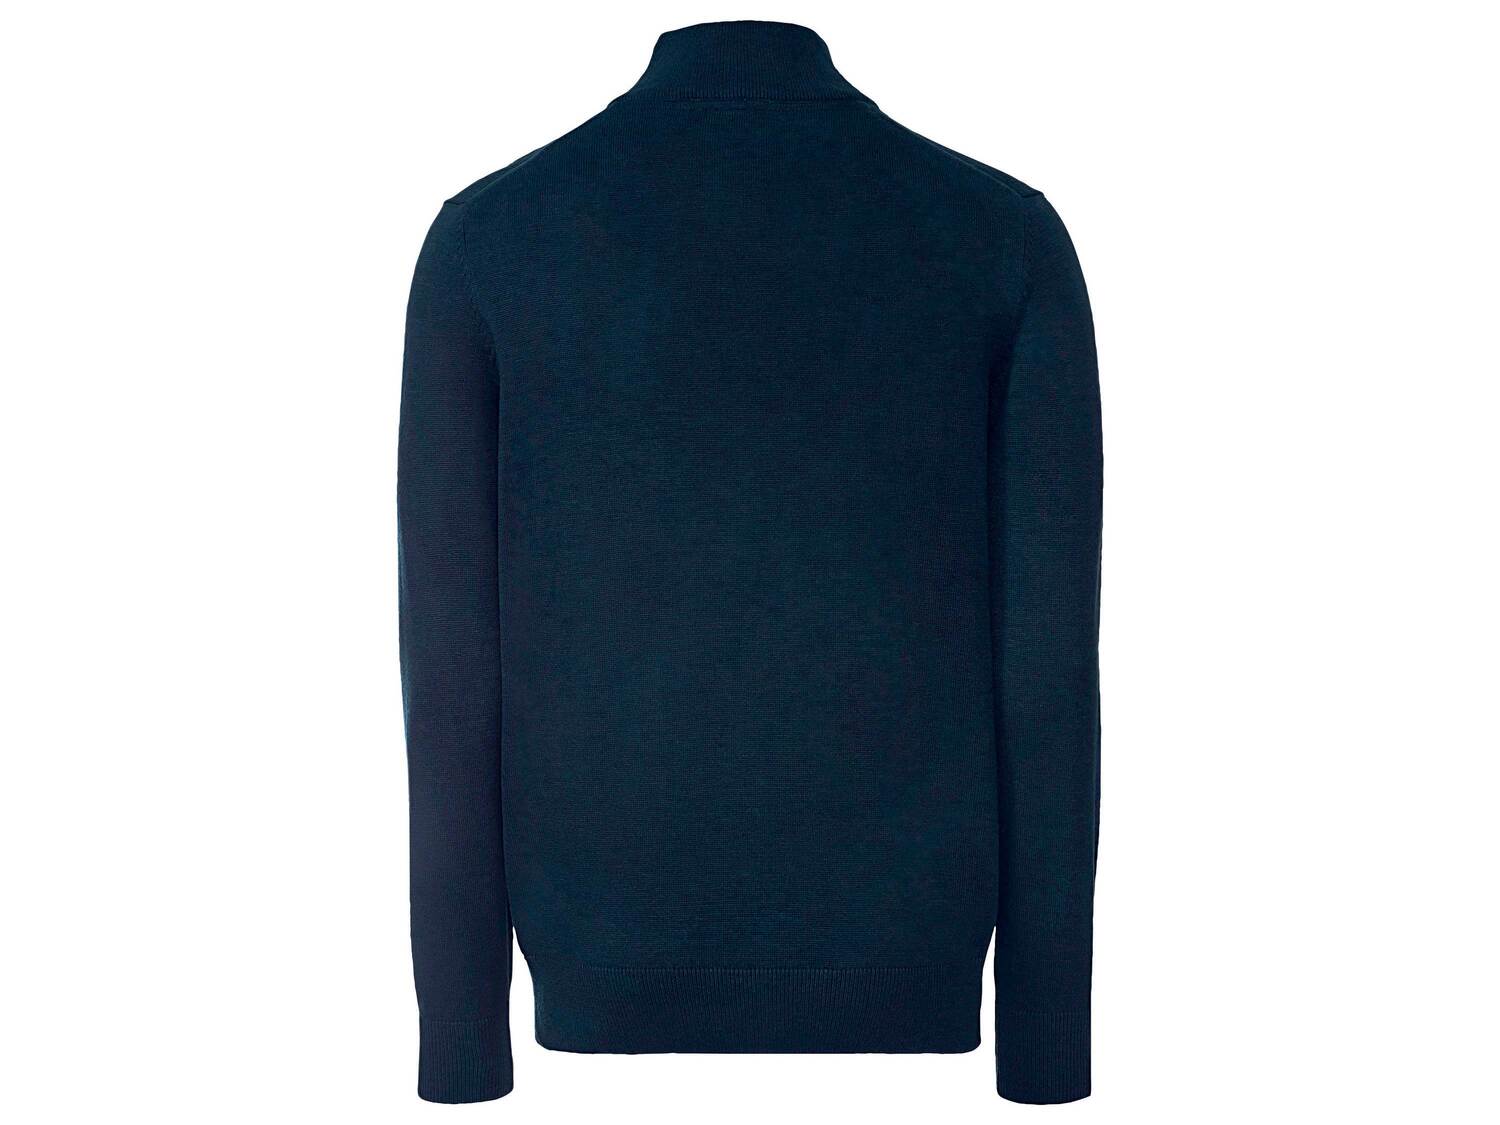 Sweter męski Livergy, cena 39,99 PLN 
- 50% bawełny, 50% poliakrylu
- rozmiary: ...